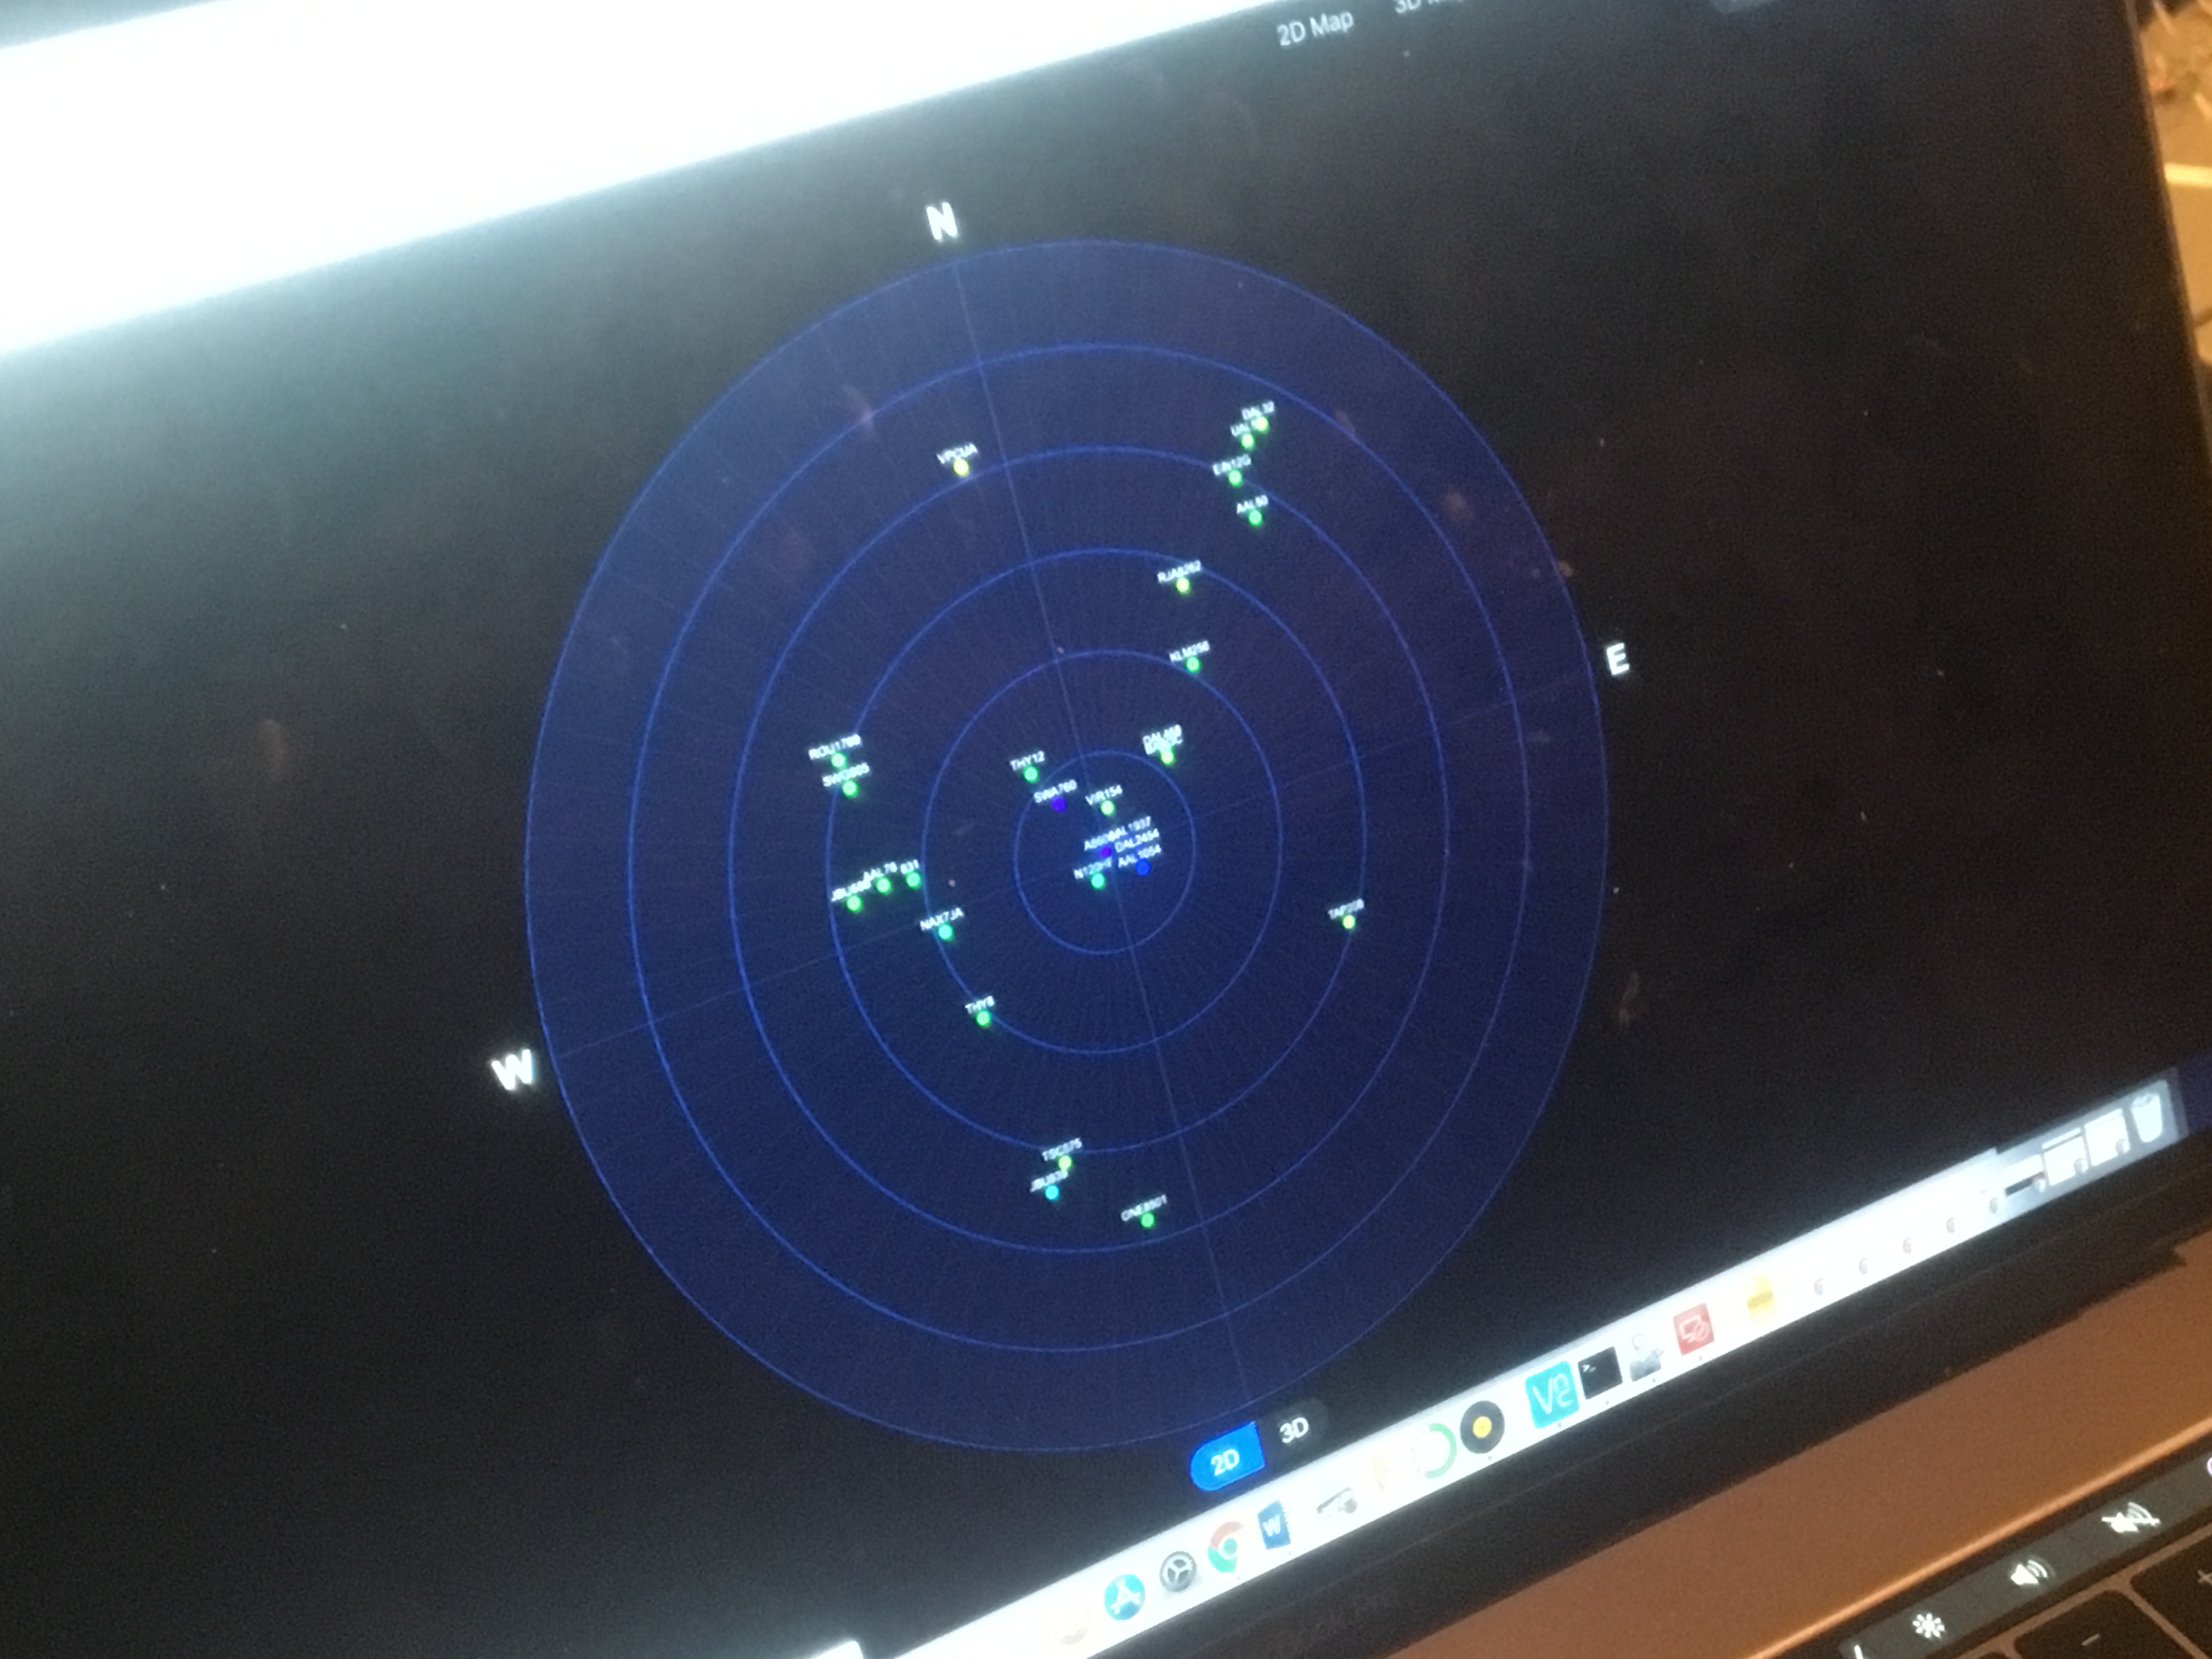 Radar display showing airplanes